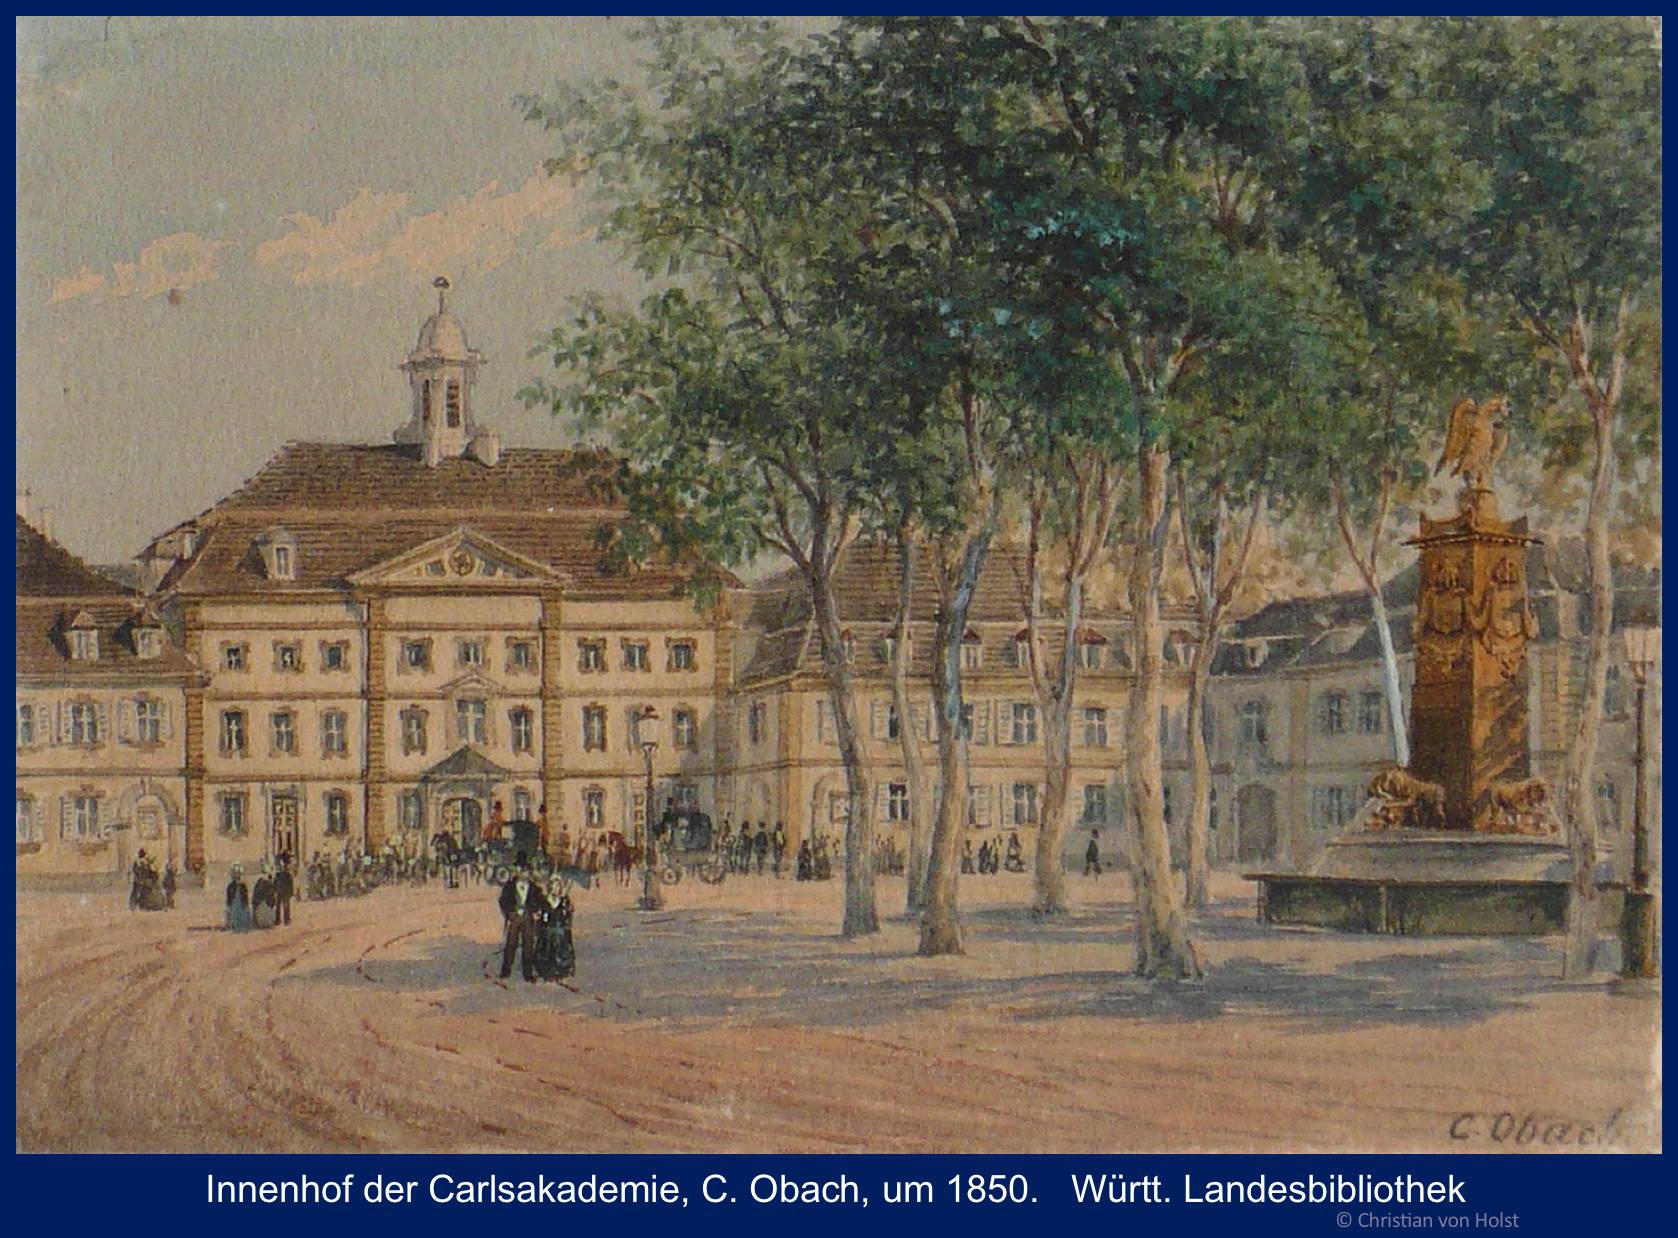 Carlsakademie Innenhof C. Obach um 1850 Württ. Landesbibliothek Stuttgart